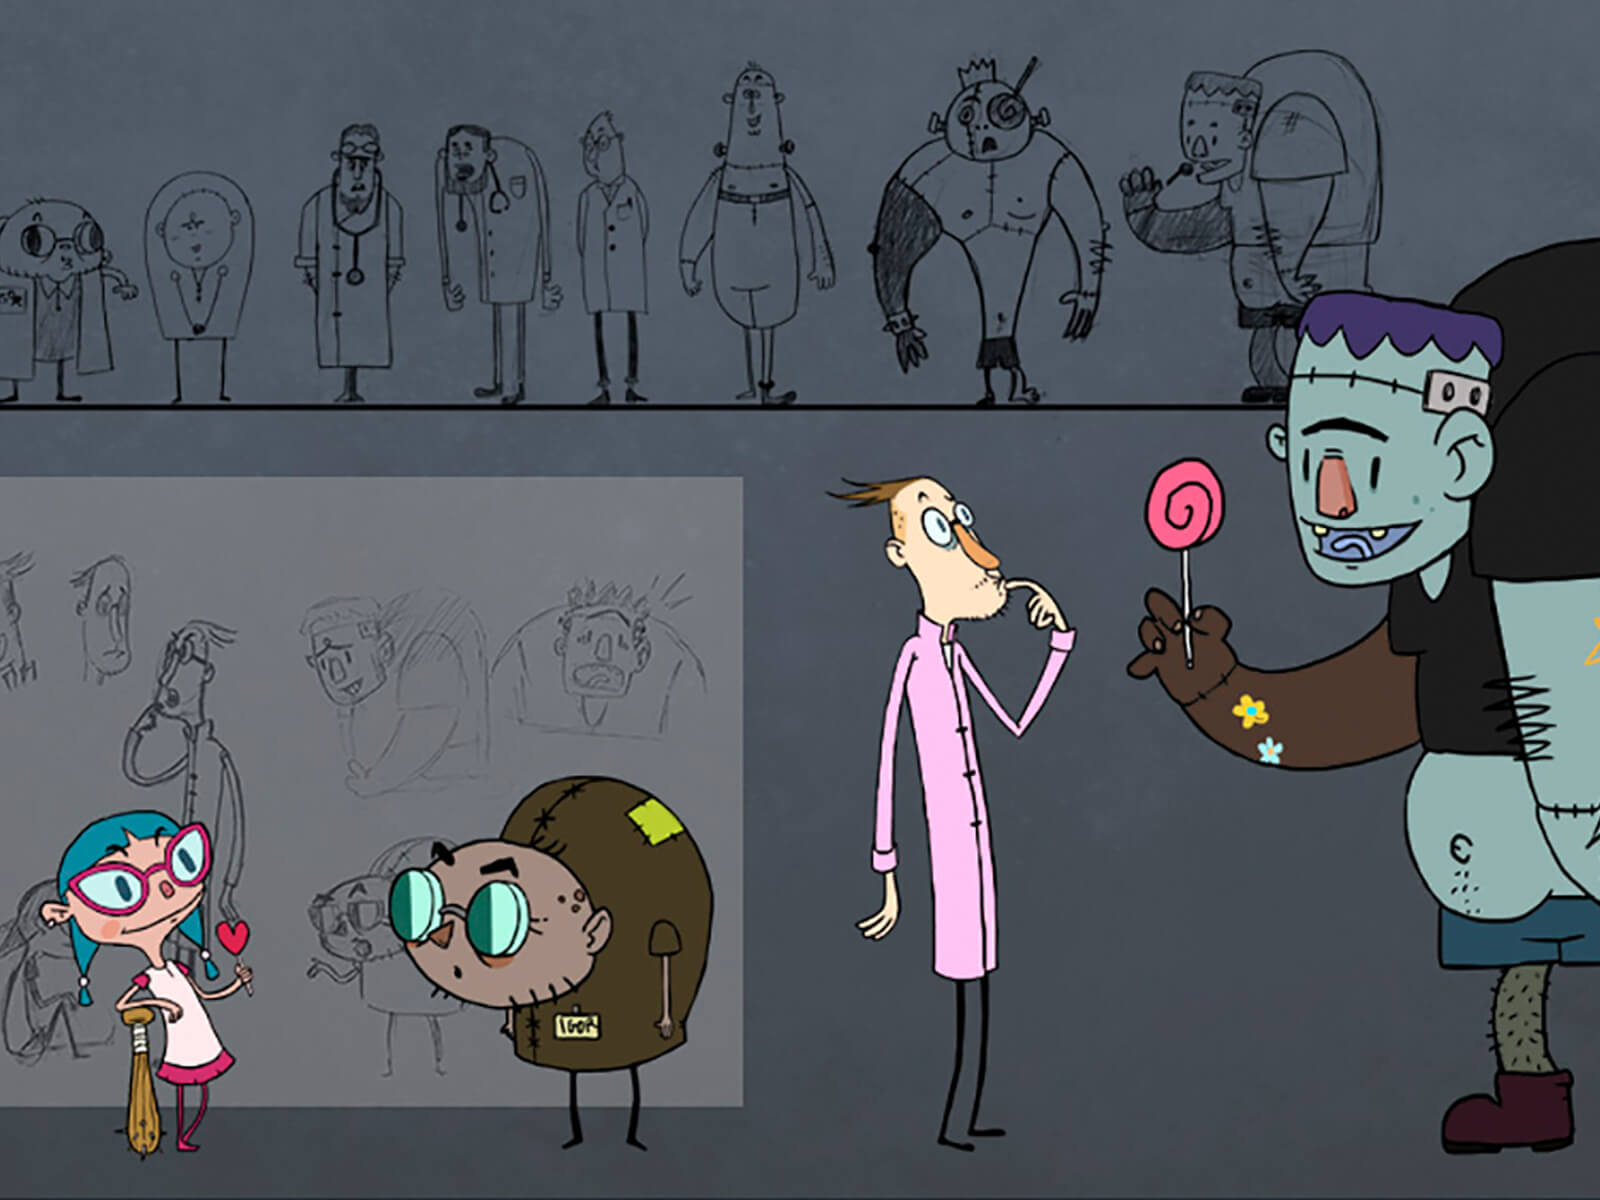 Bocetos conceptuales de una niña, un científico y su asistente enano, y un simpático Monstruo de Frankenstein sosteniendo una piruleta.